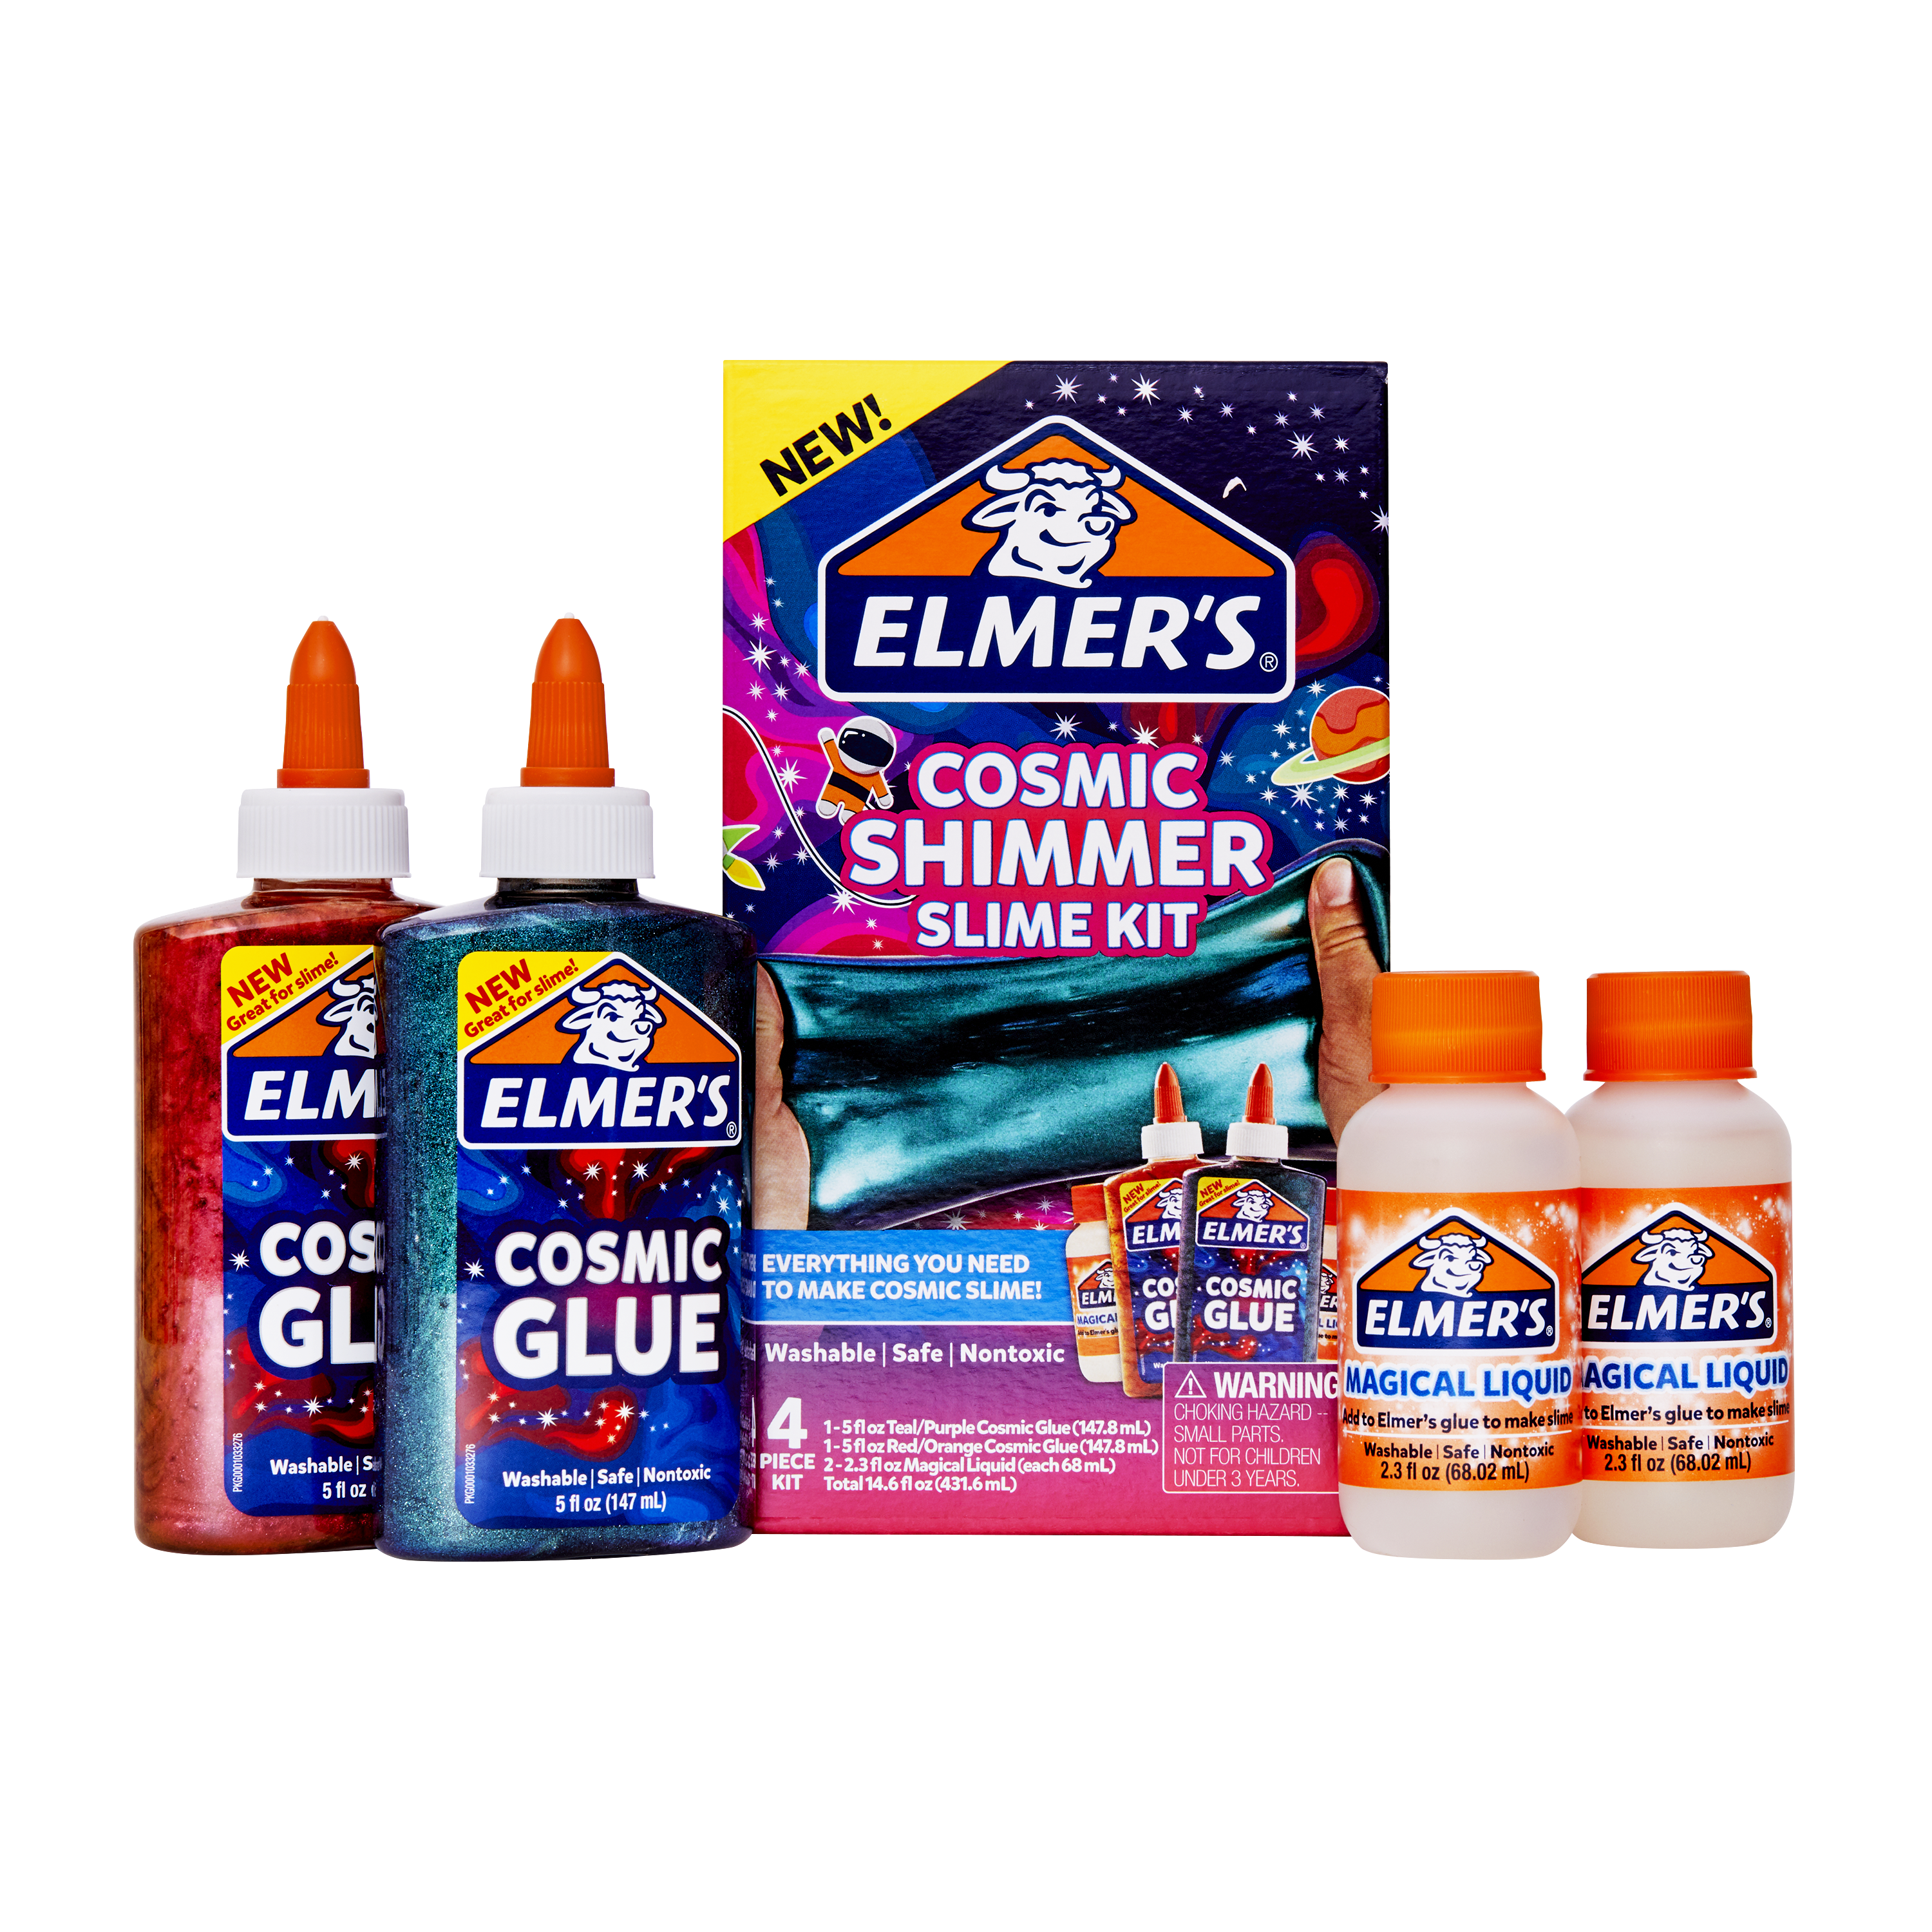  Elmer s  Cosmic Shimmer Slime  Kit Contains Elmer s  Cosmic 